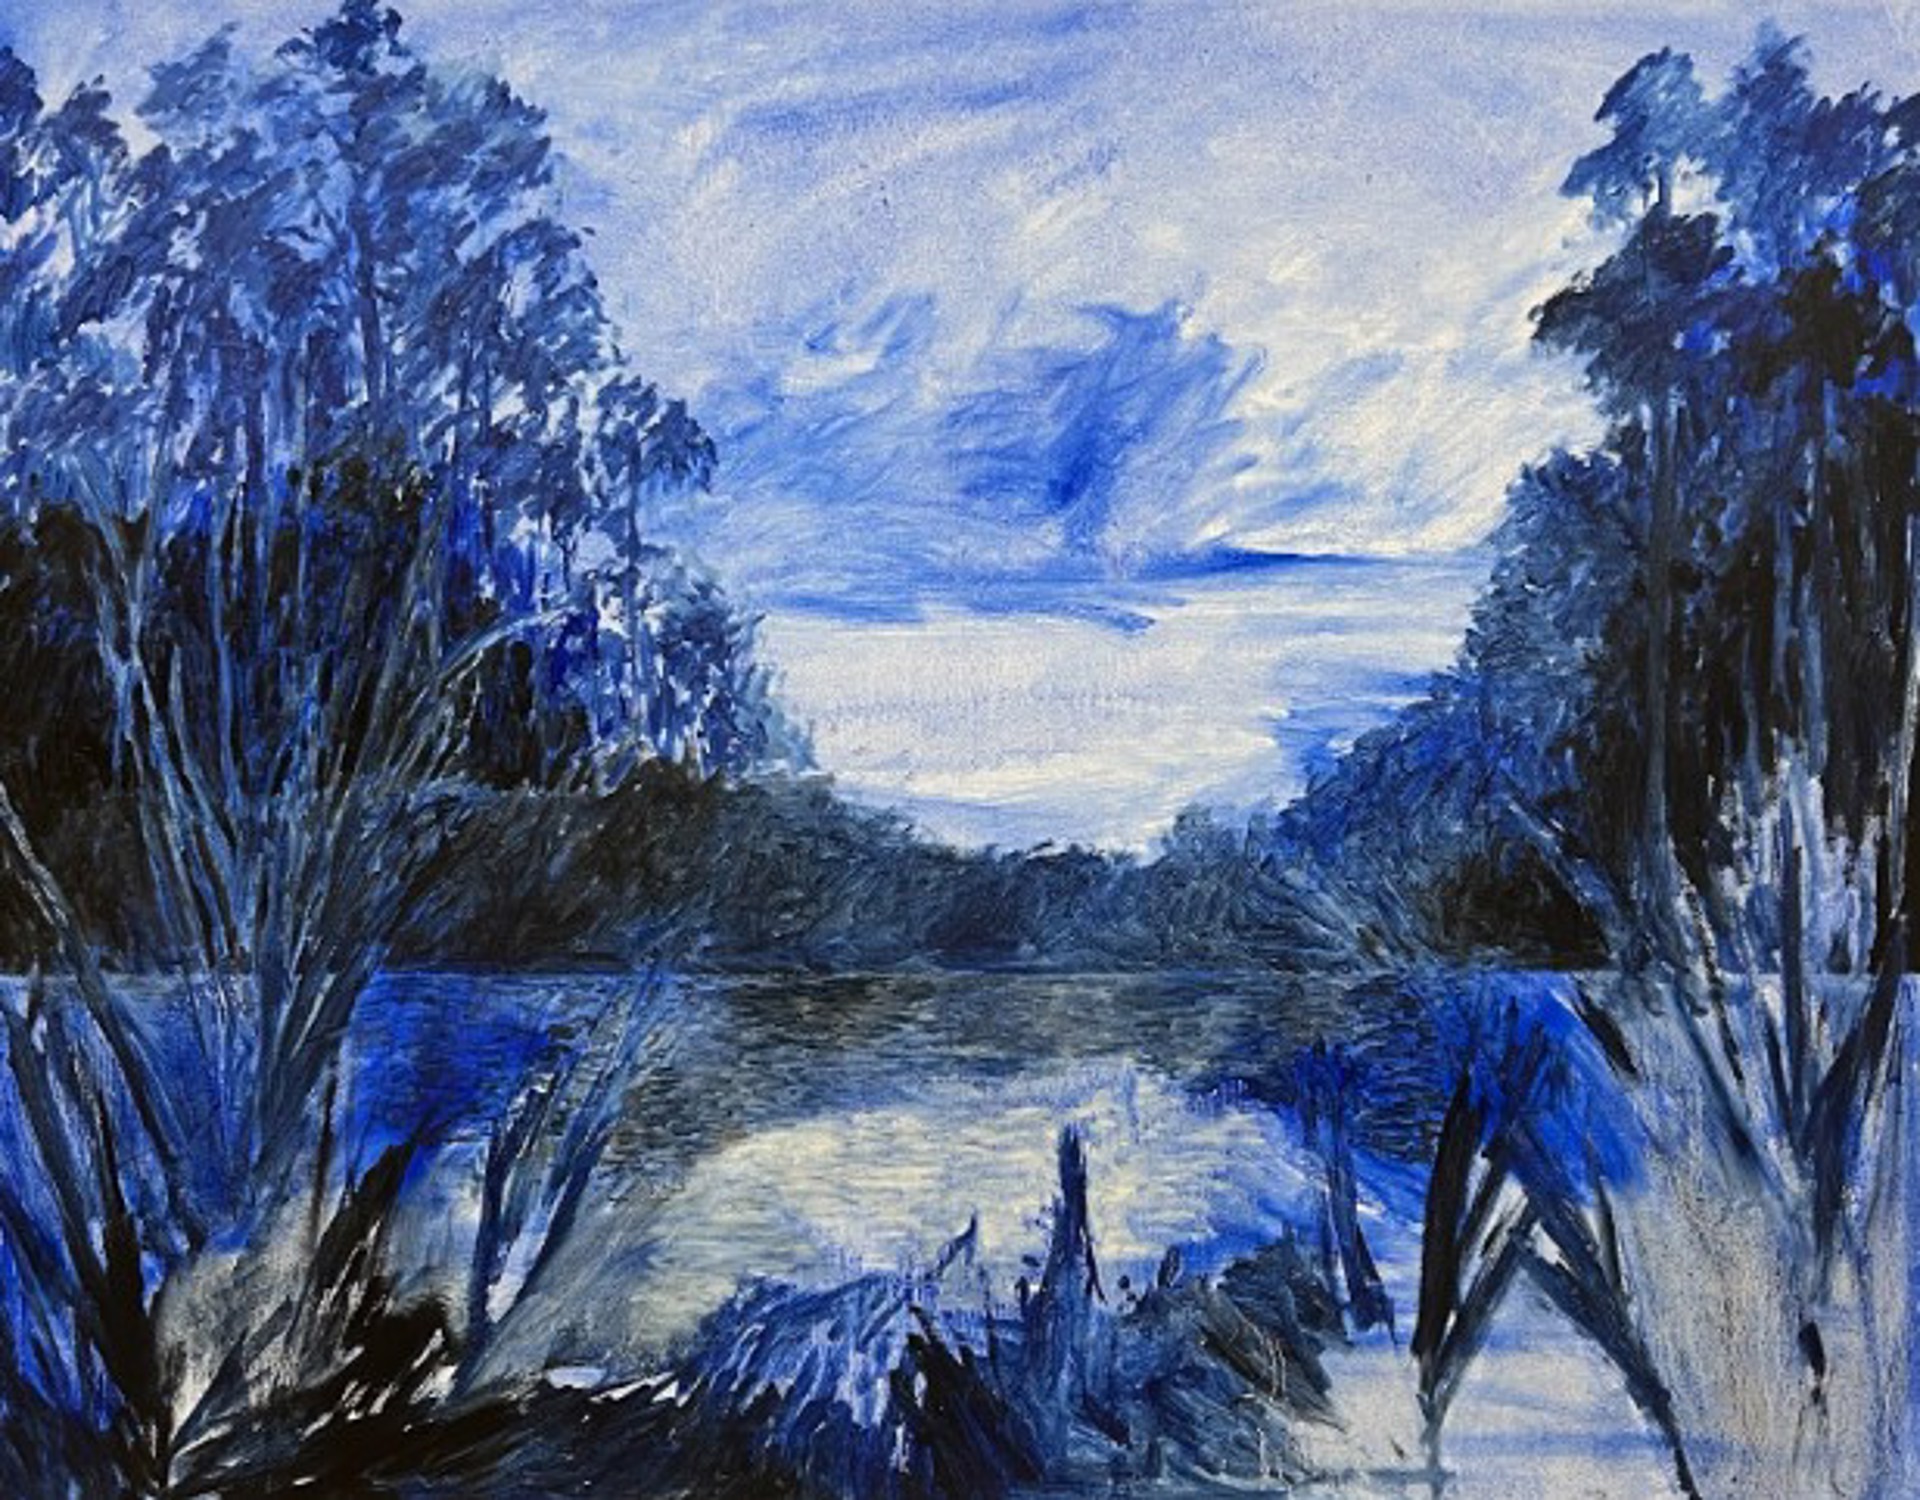 Blue Swamp by Mia Kaplan